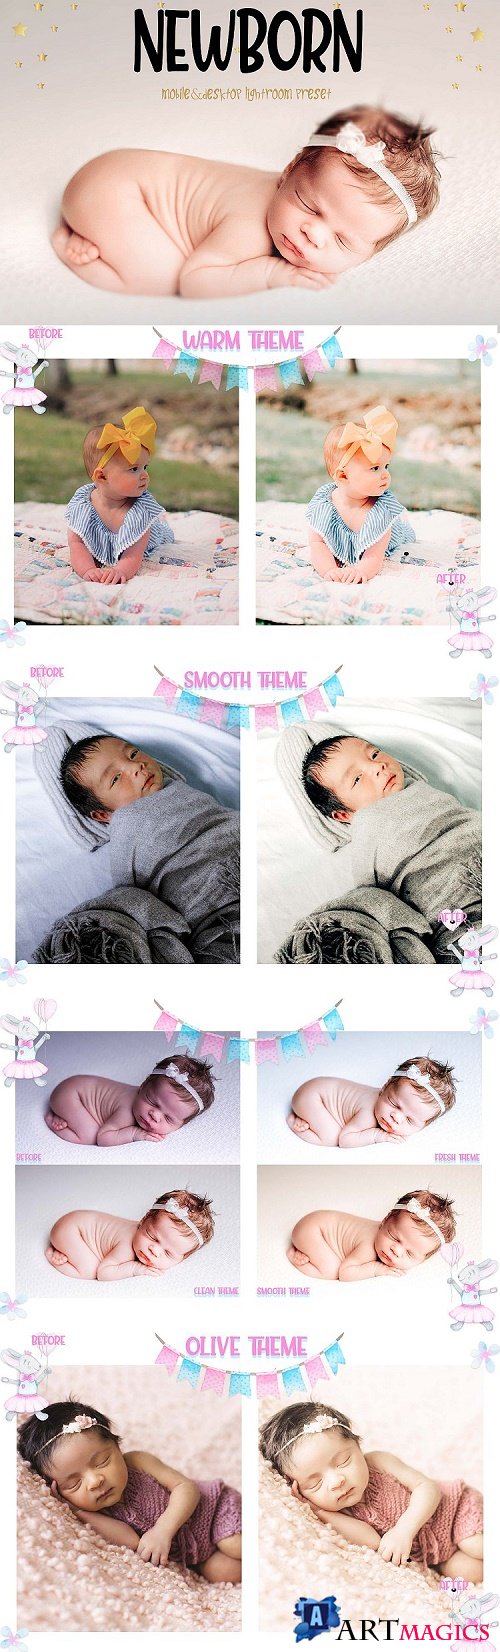 10 Newborn Mobile & Desktop Lightroom Presets, baby skin LR  - 455669